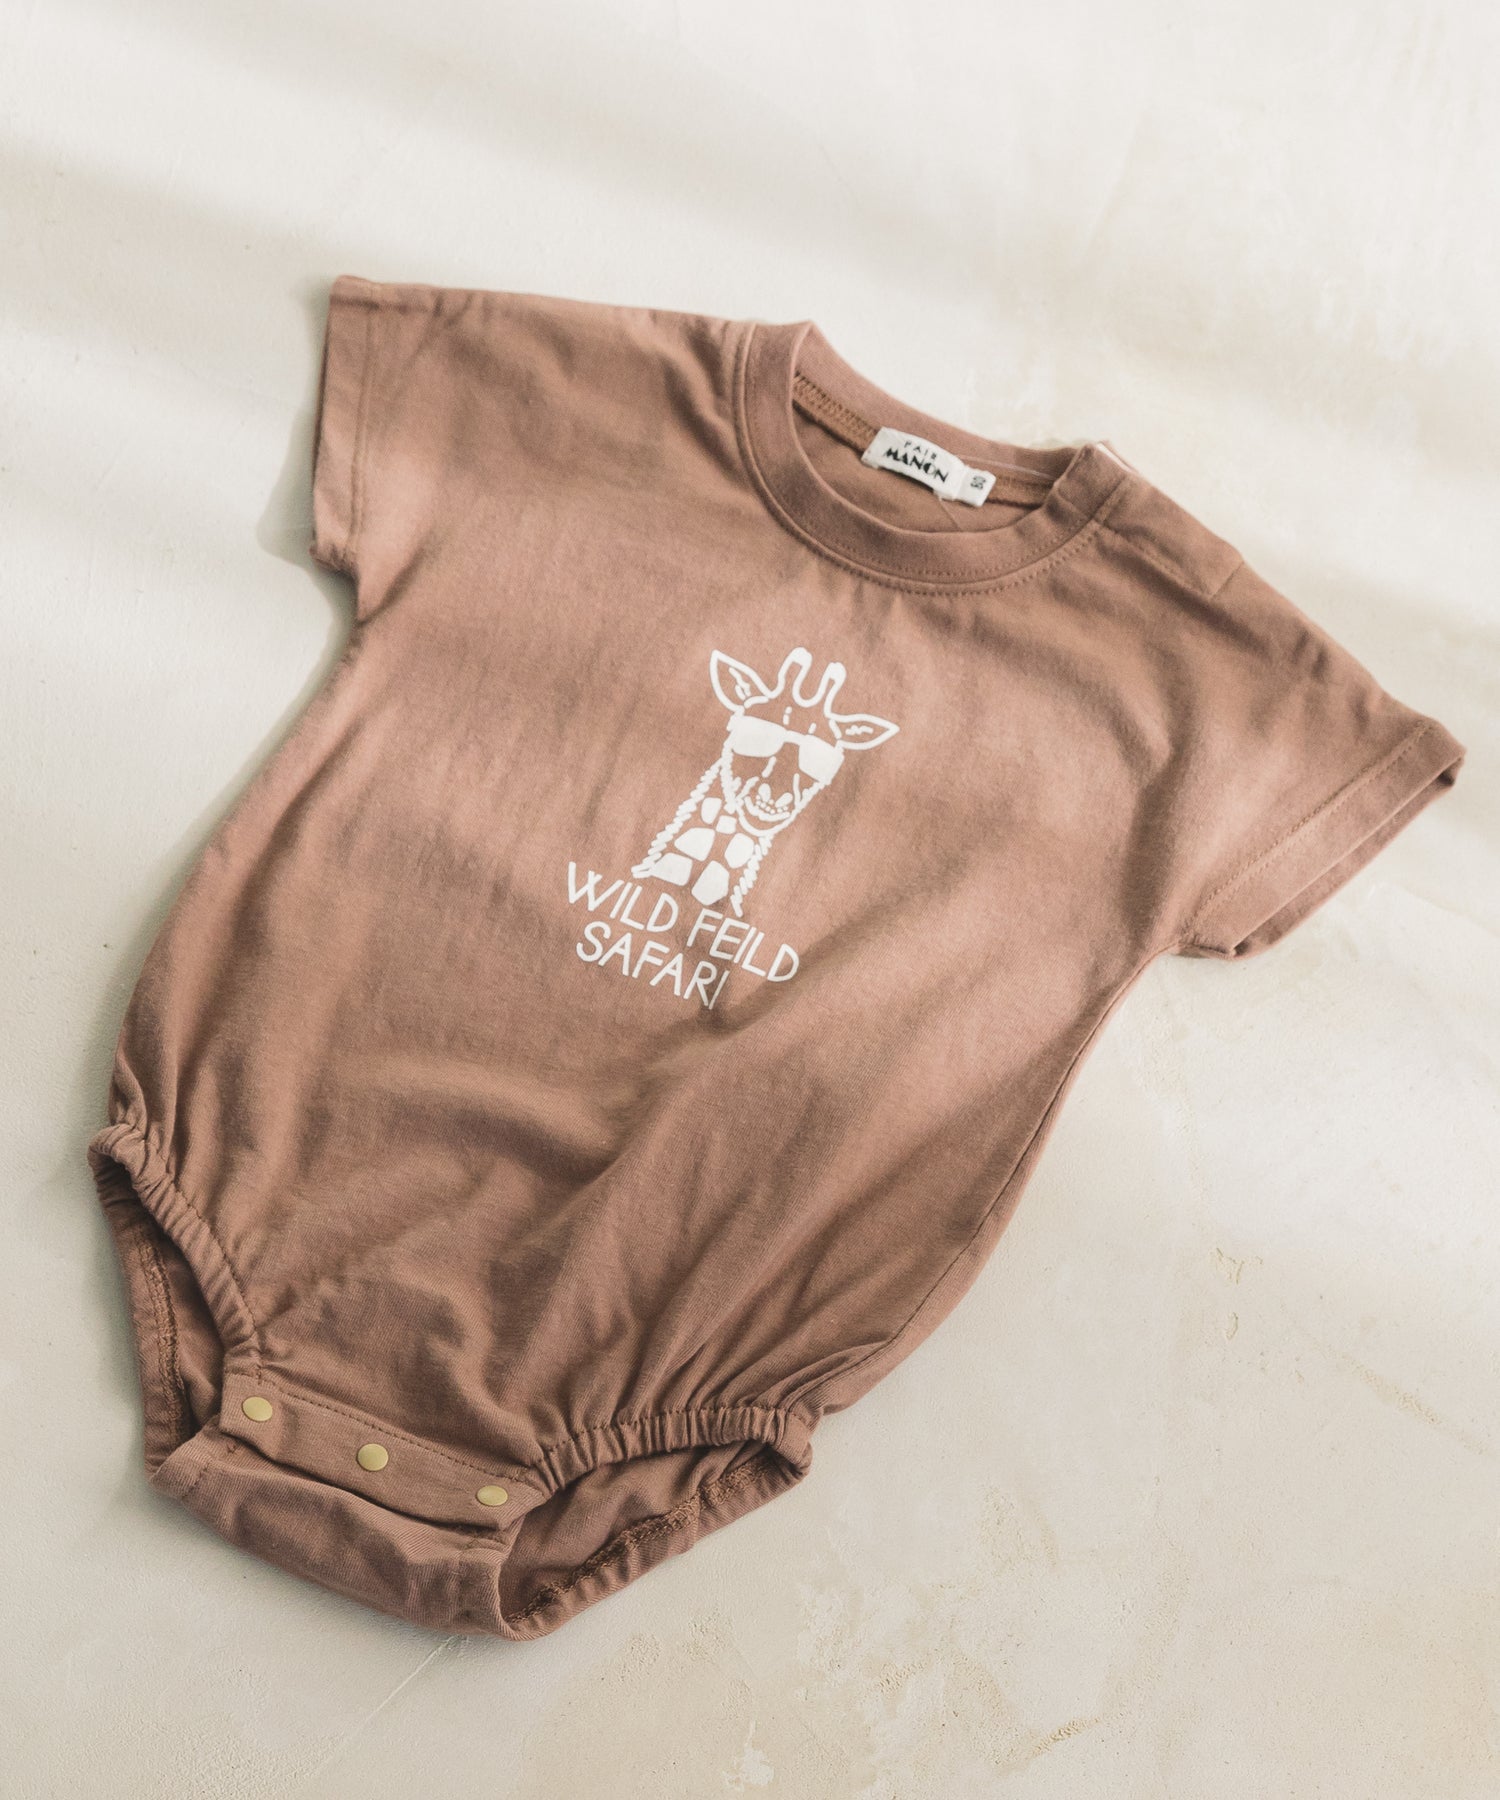 プレミアムコットン100 ベビー かぞくおそろい オリジナル シンプル ポップ ロゴ イラスト フォト プリント 半袖 Tシャツ カ Pairmanon